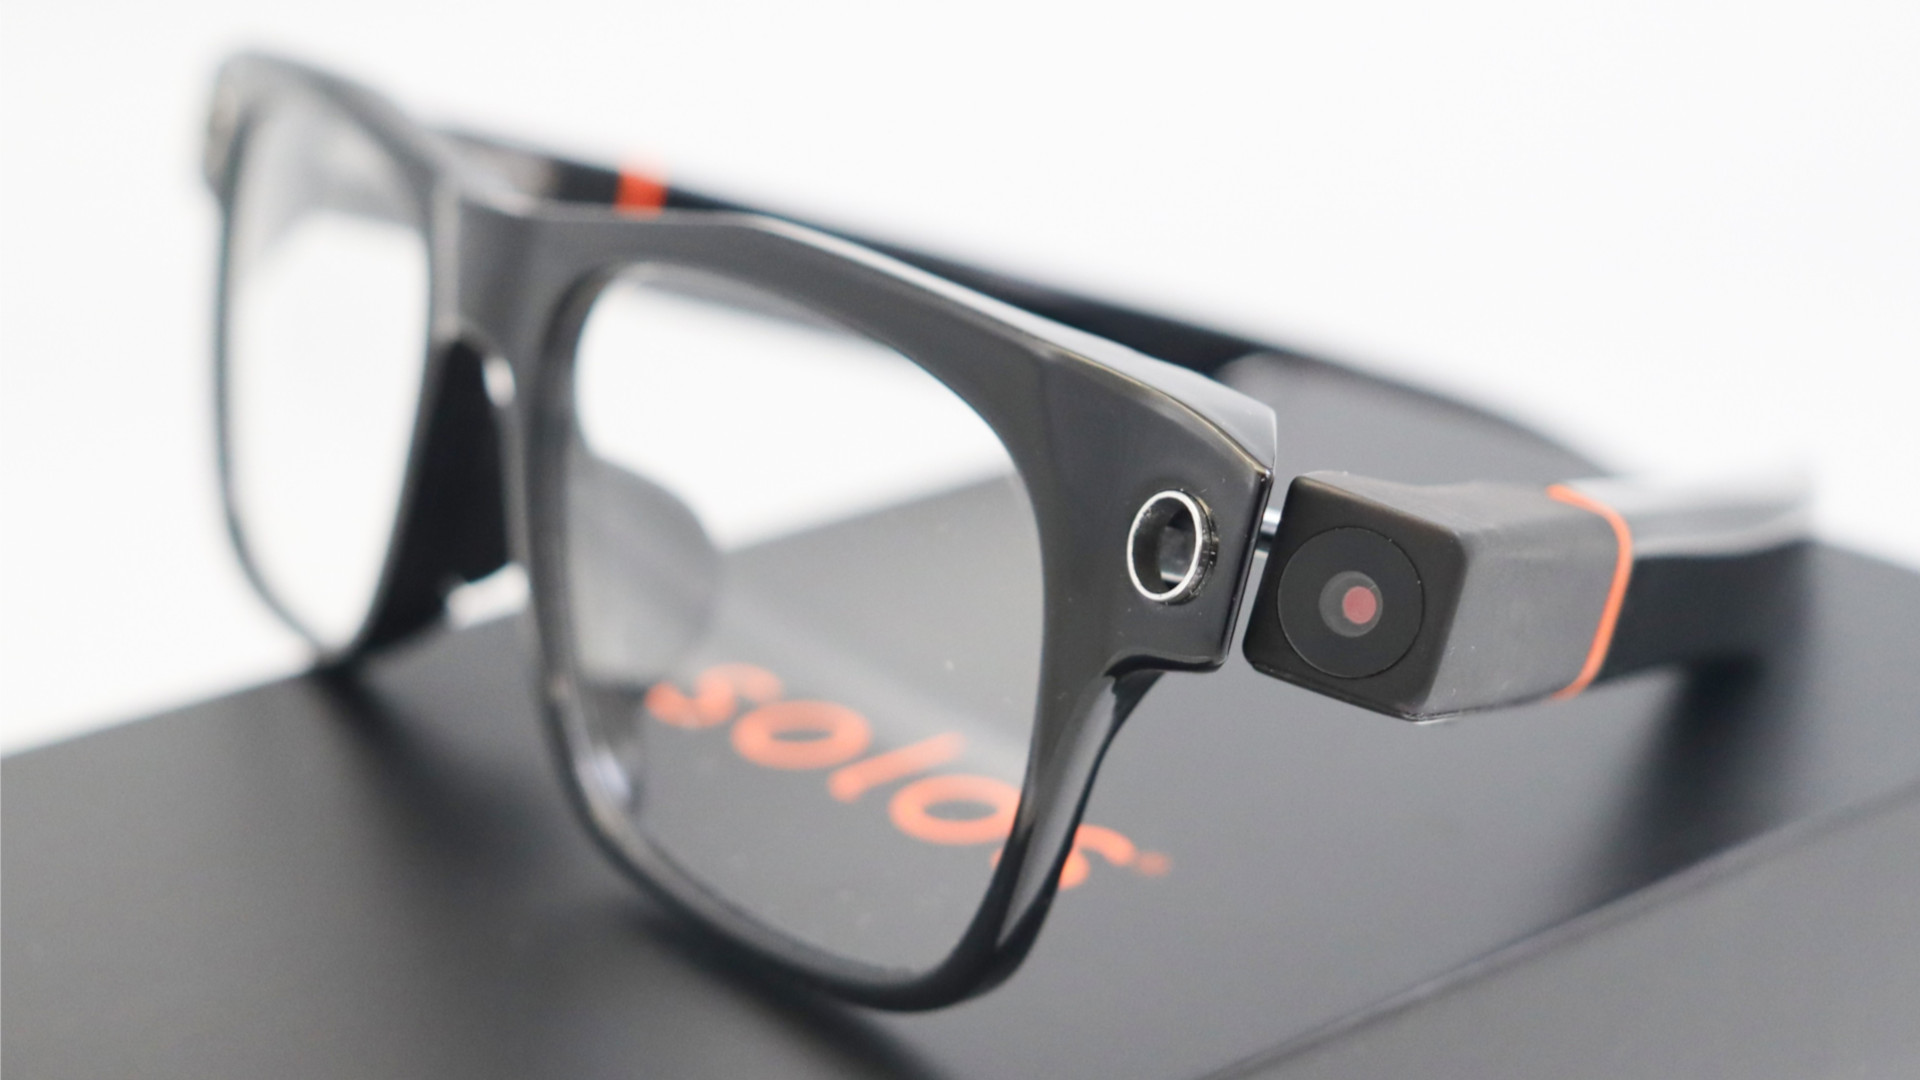 Solos AirGo Vision 스마트 안경의 카메라 모듈을 클로즈업으로 찍은 사진입니다.